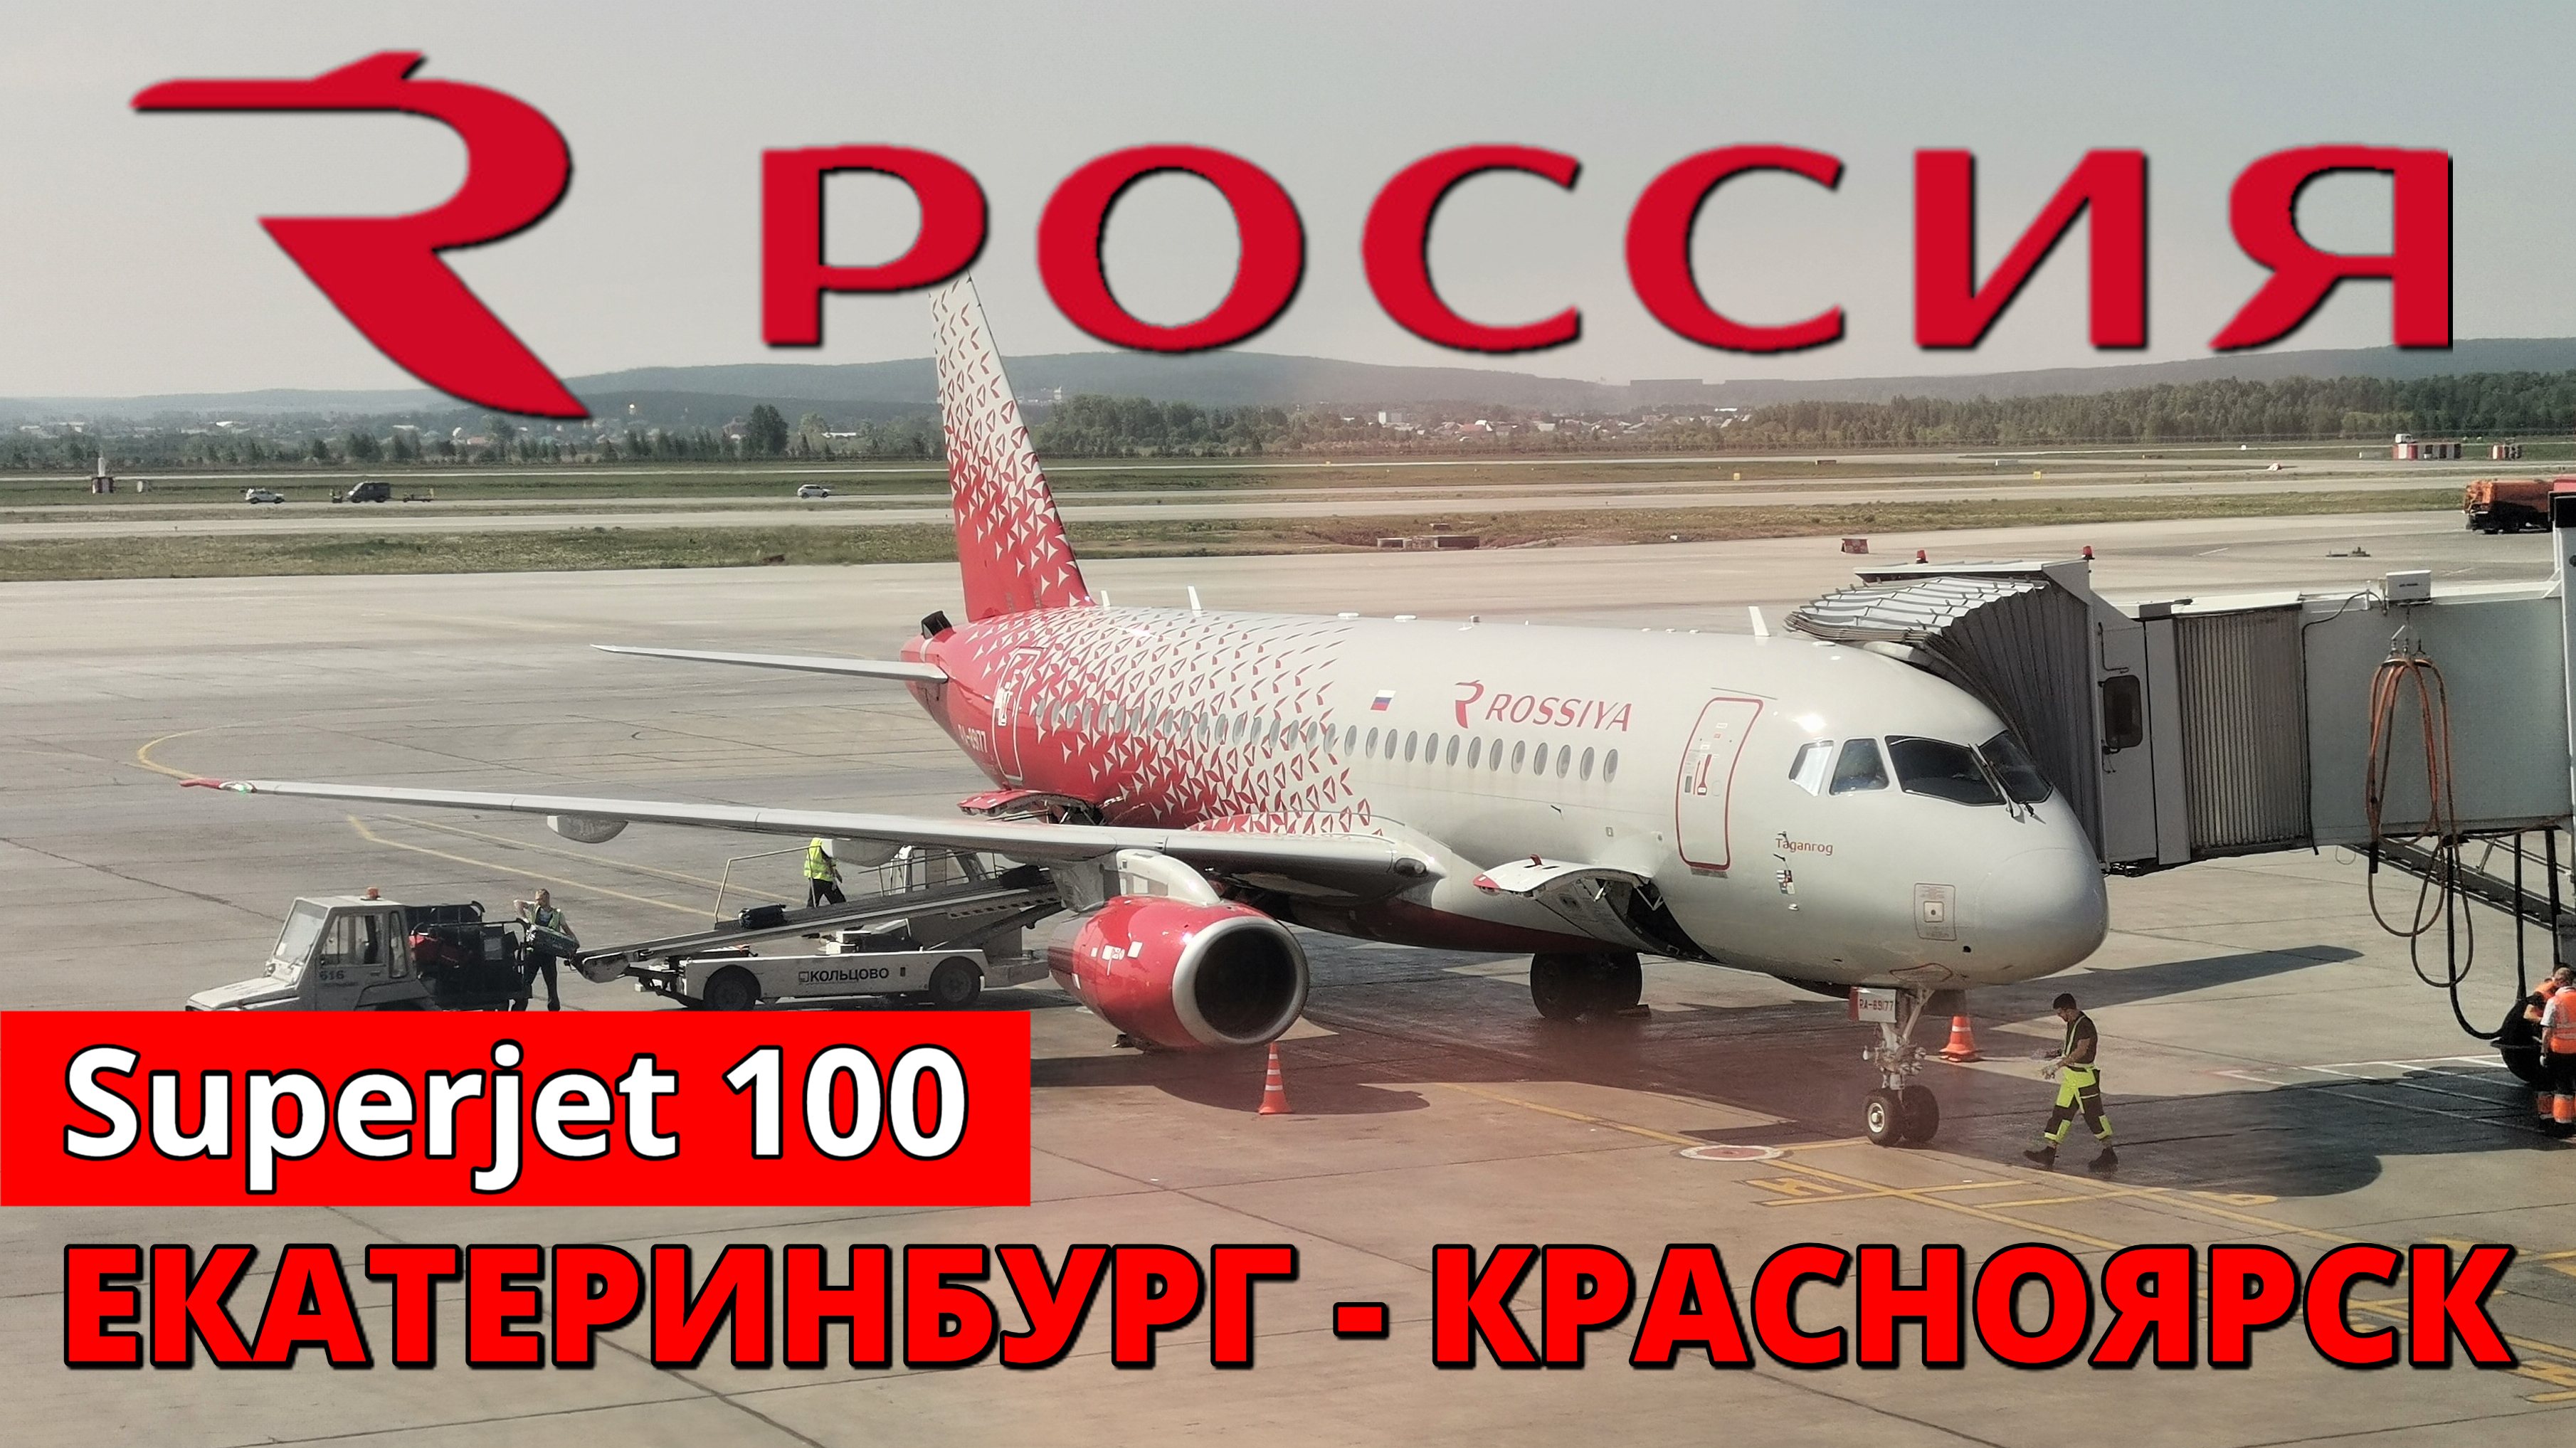 Россия: перелет Екатеринбург - Красноярск на Superjet 100 | Trip Report: Ekaterinburg - Krasnoyarsk